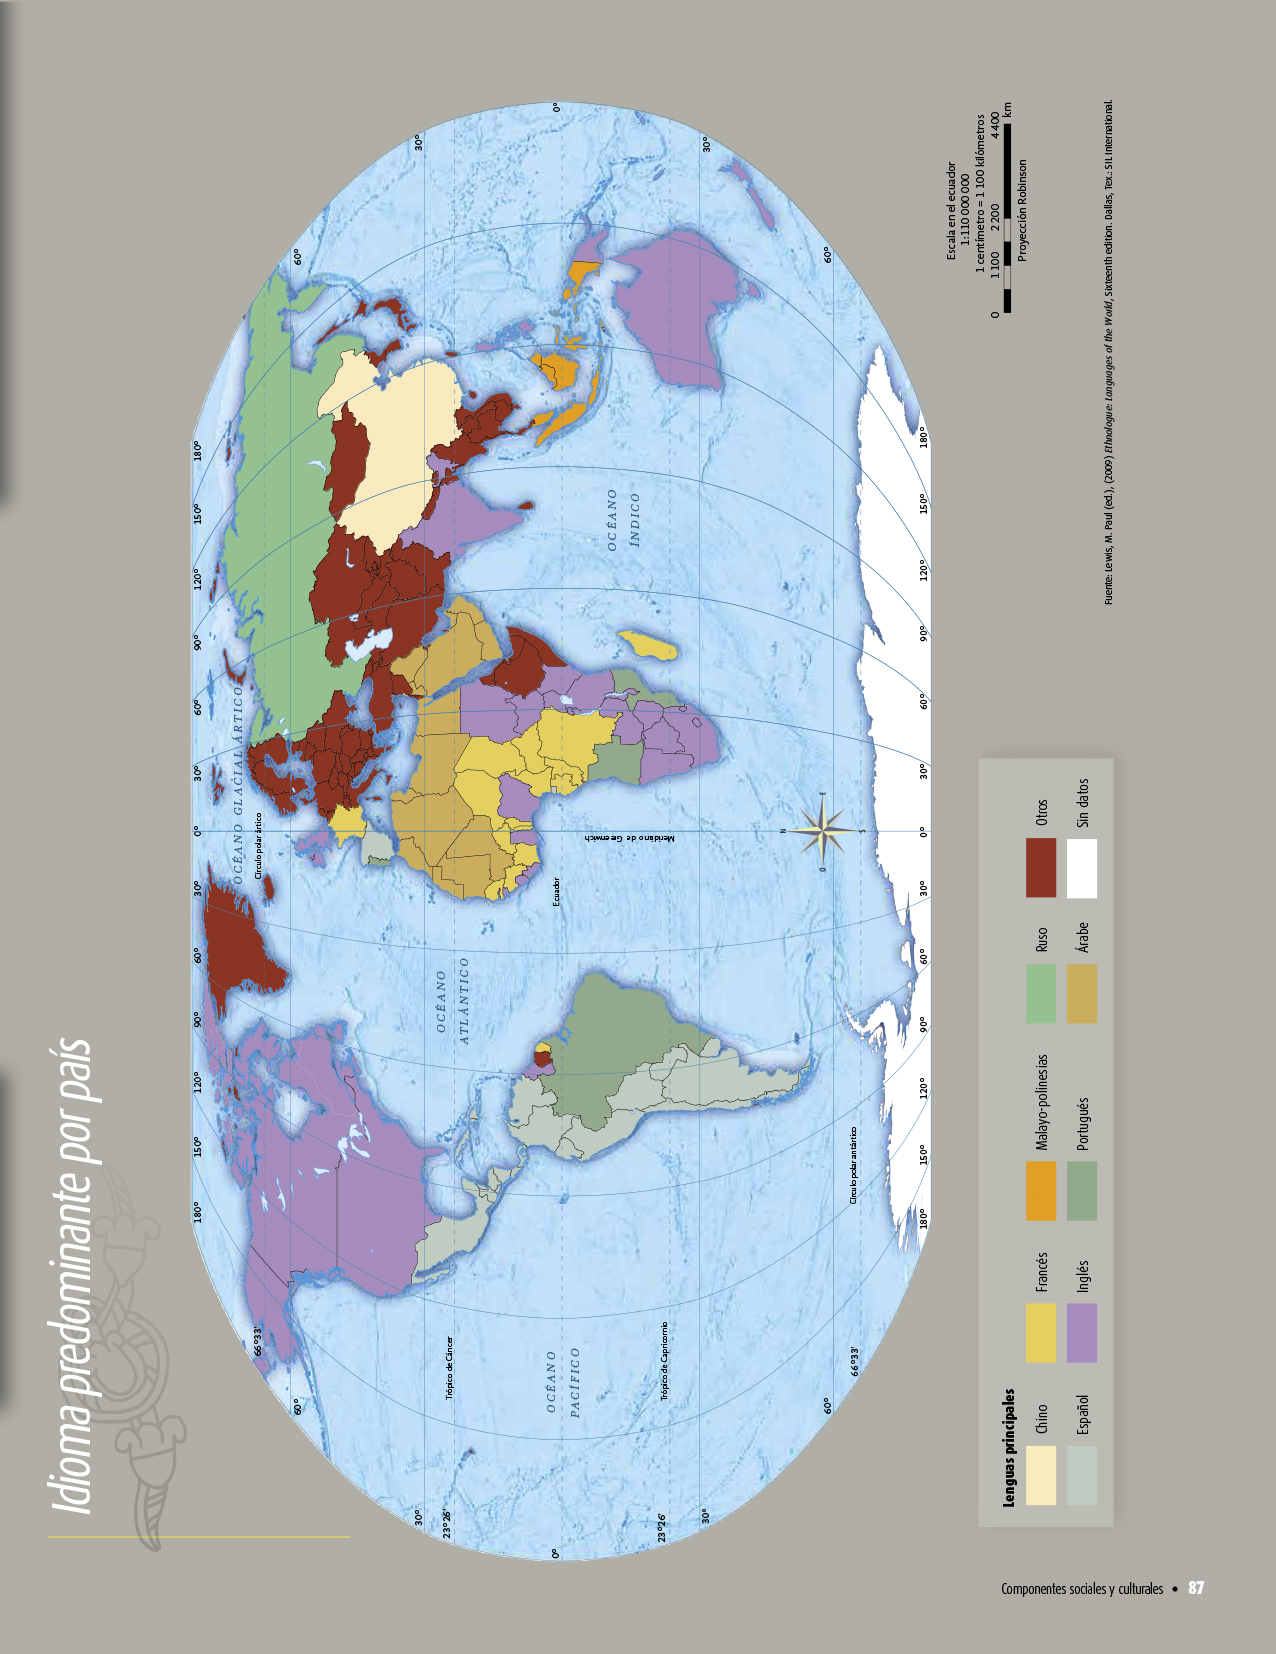 Atlas de geografía del mundo quinto grado 2017-2018 – Página 87